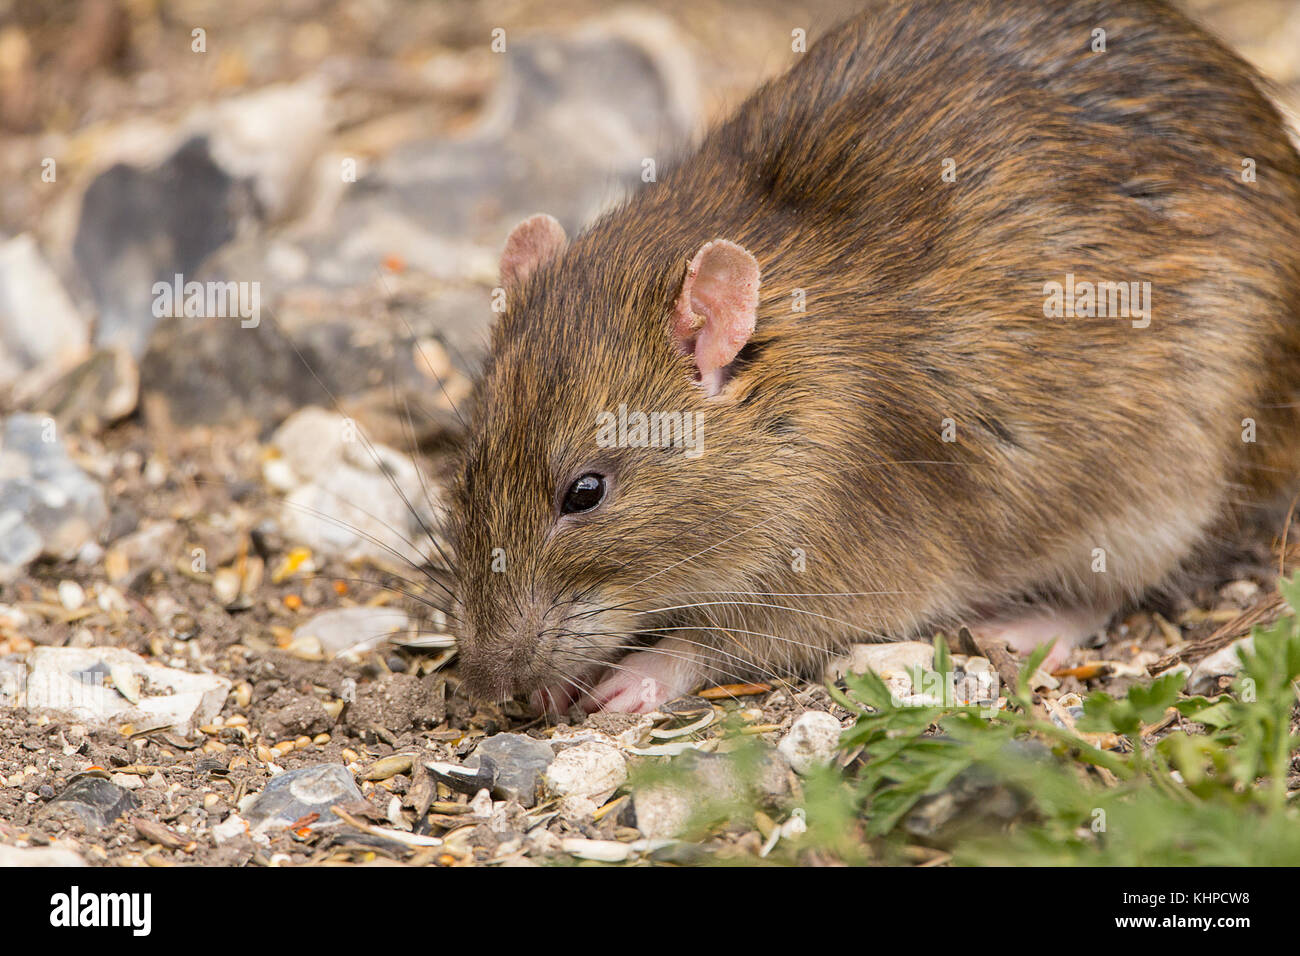 Brown Rat sous les mangeoires d'alimentation à une réserve faunique. Il a quelques problèmes avec ses oreilles mais sinon l'air propre et sain. Banque D'Images